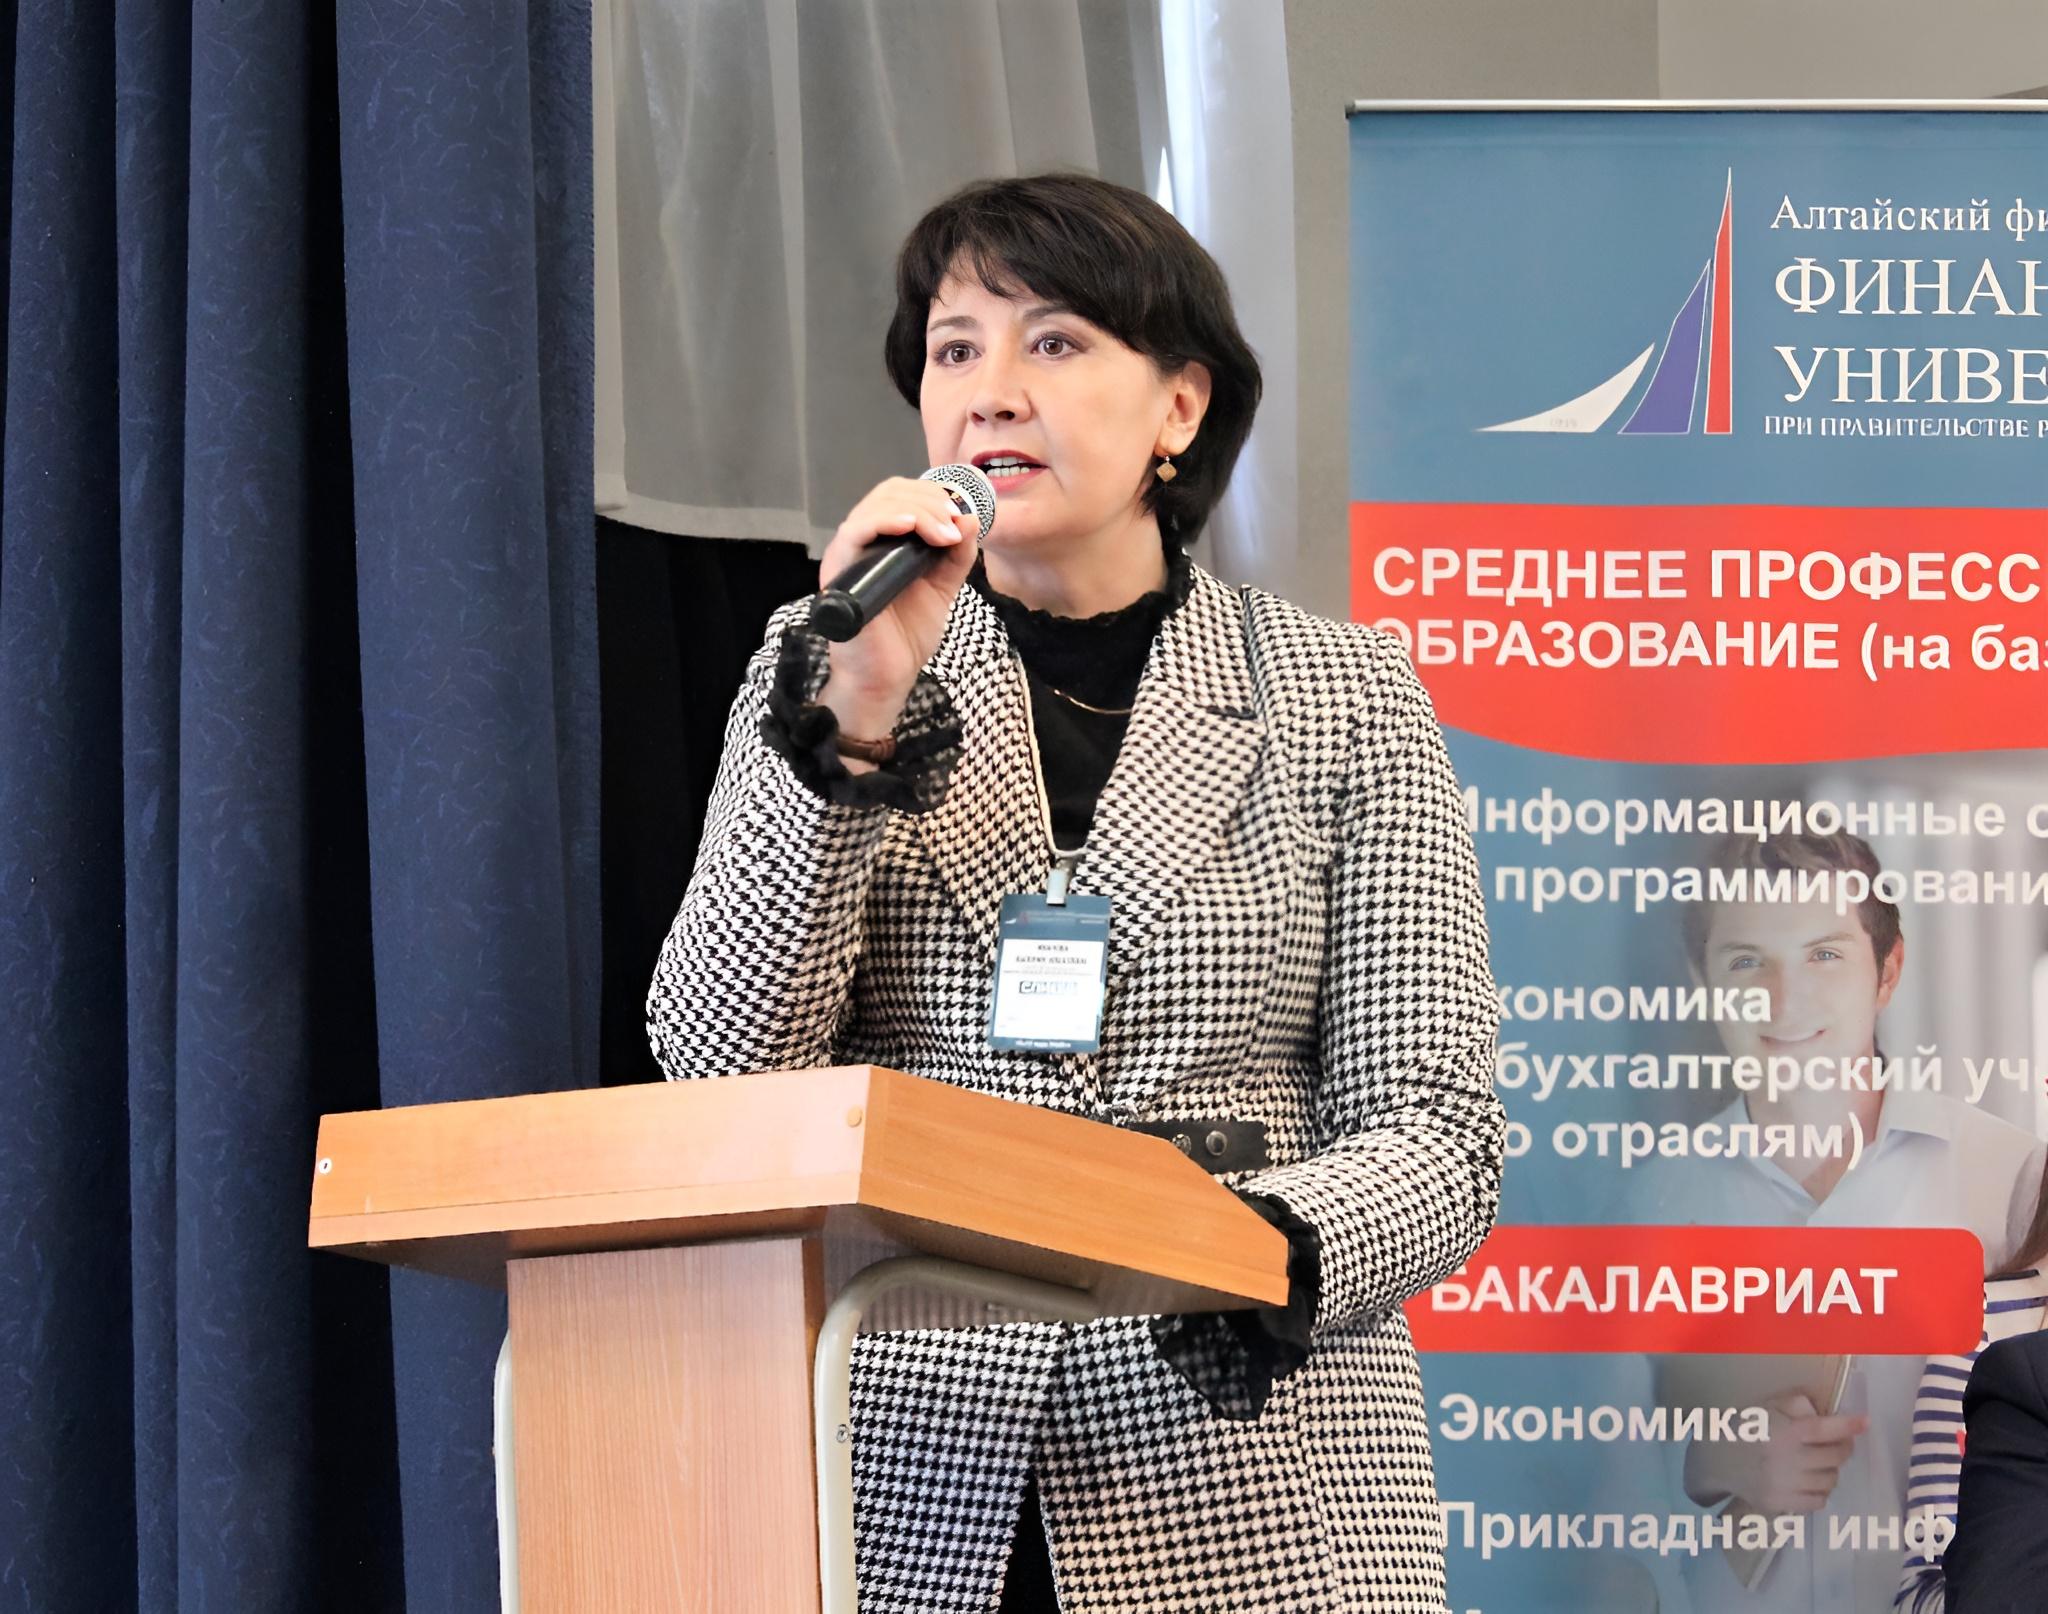 Валерия Иванова, директор Алтайского филиала Финуниверситета